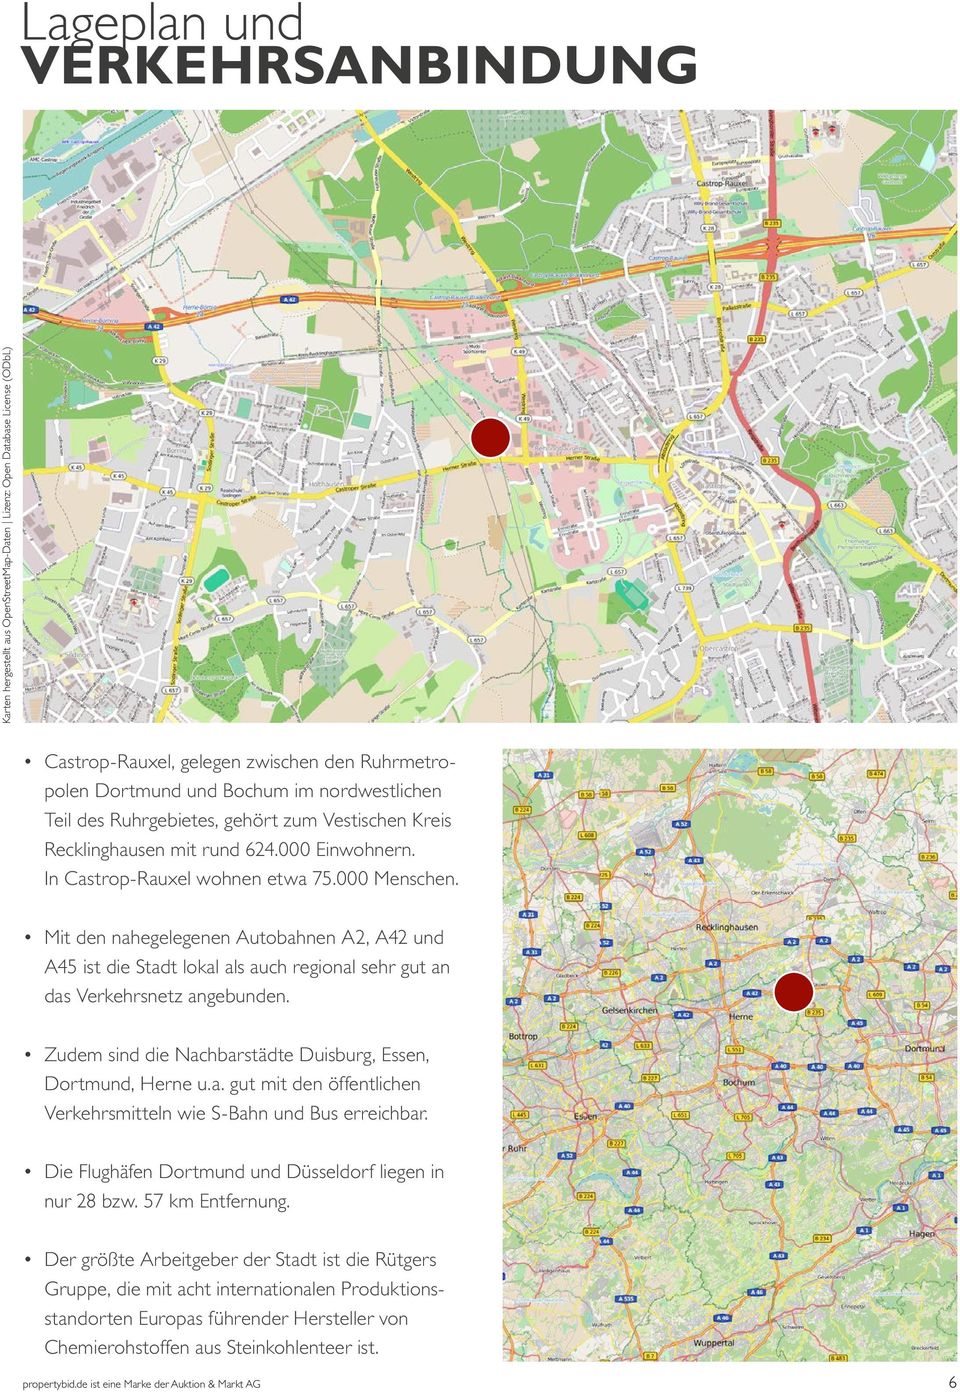 Mit den nahegelegenen Autobahnen A2, A42 und A45 ist die Stadt lokal als auch regional sehr gut an das Verkehrsnetz angebunden. Zudem sind die Nachbarstädte Duisburg, Essen, Dortmund, Herne u.a. gut mit den öffentlichen Verkehrsmitteln wie S-Bahn und Bus erreichbar.